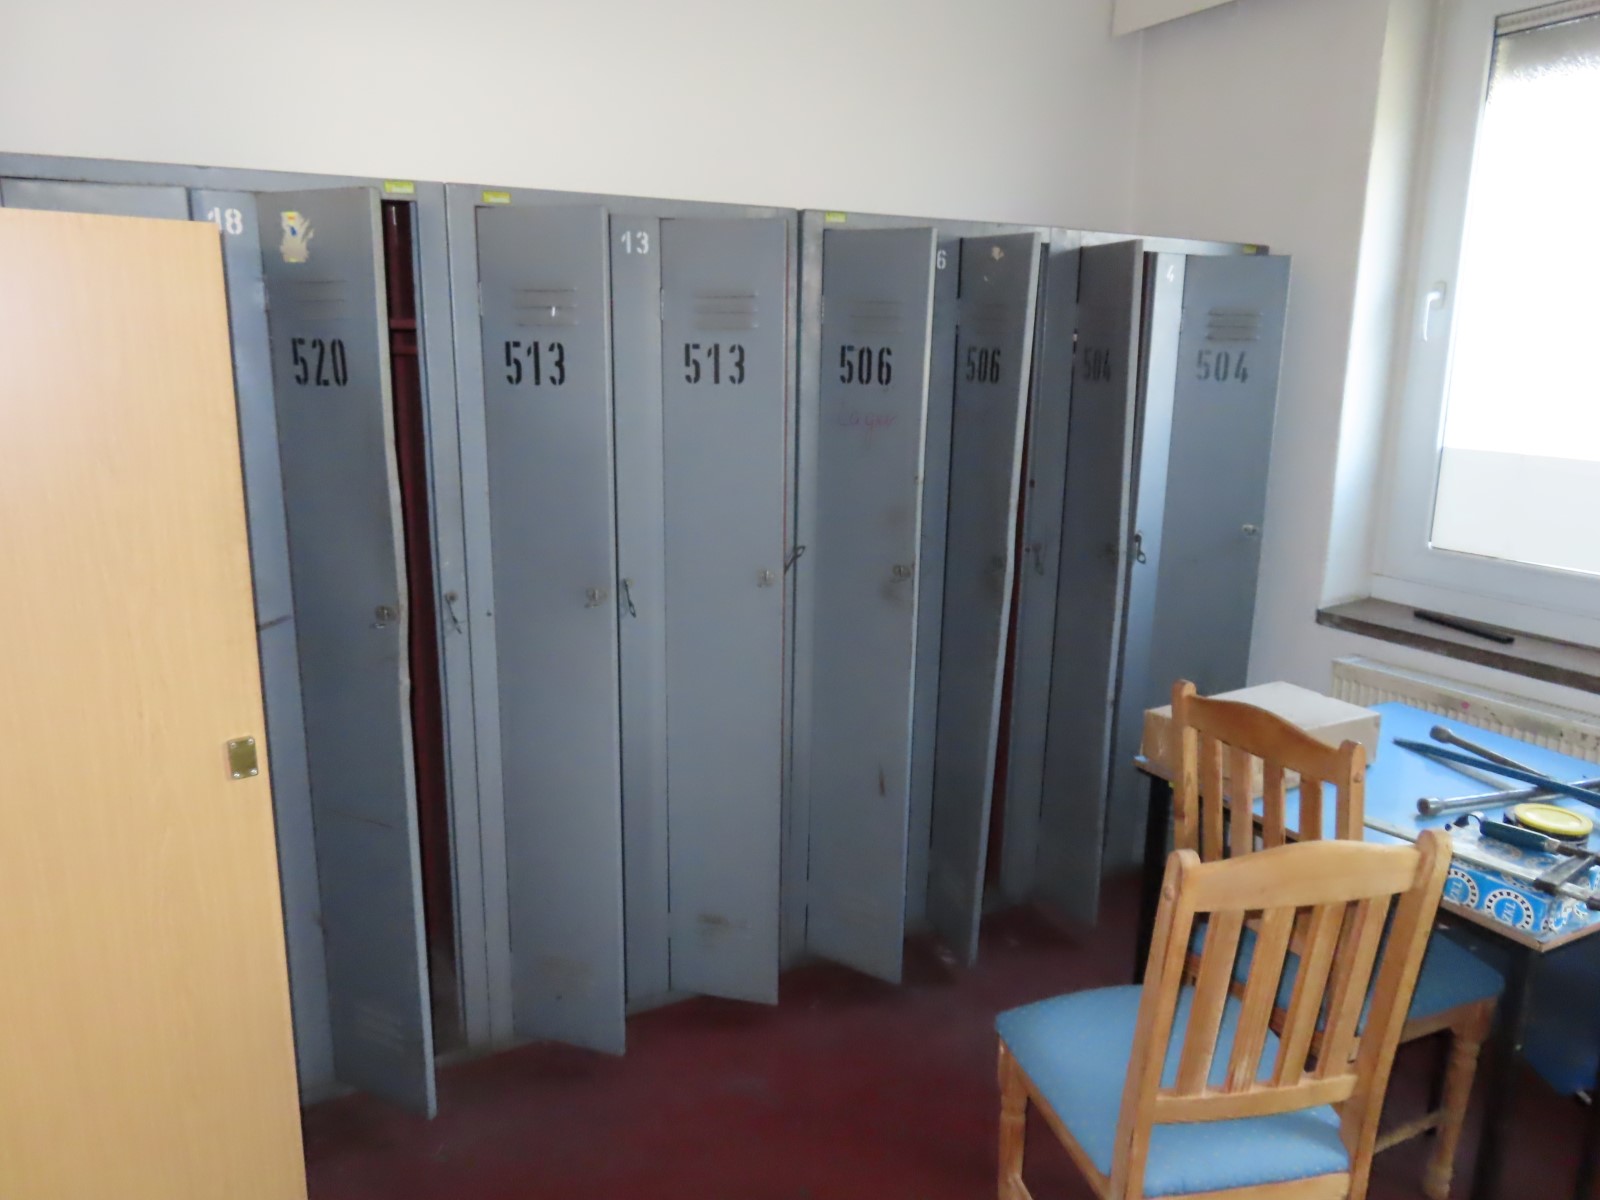 Lot of sheet steel lockers